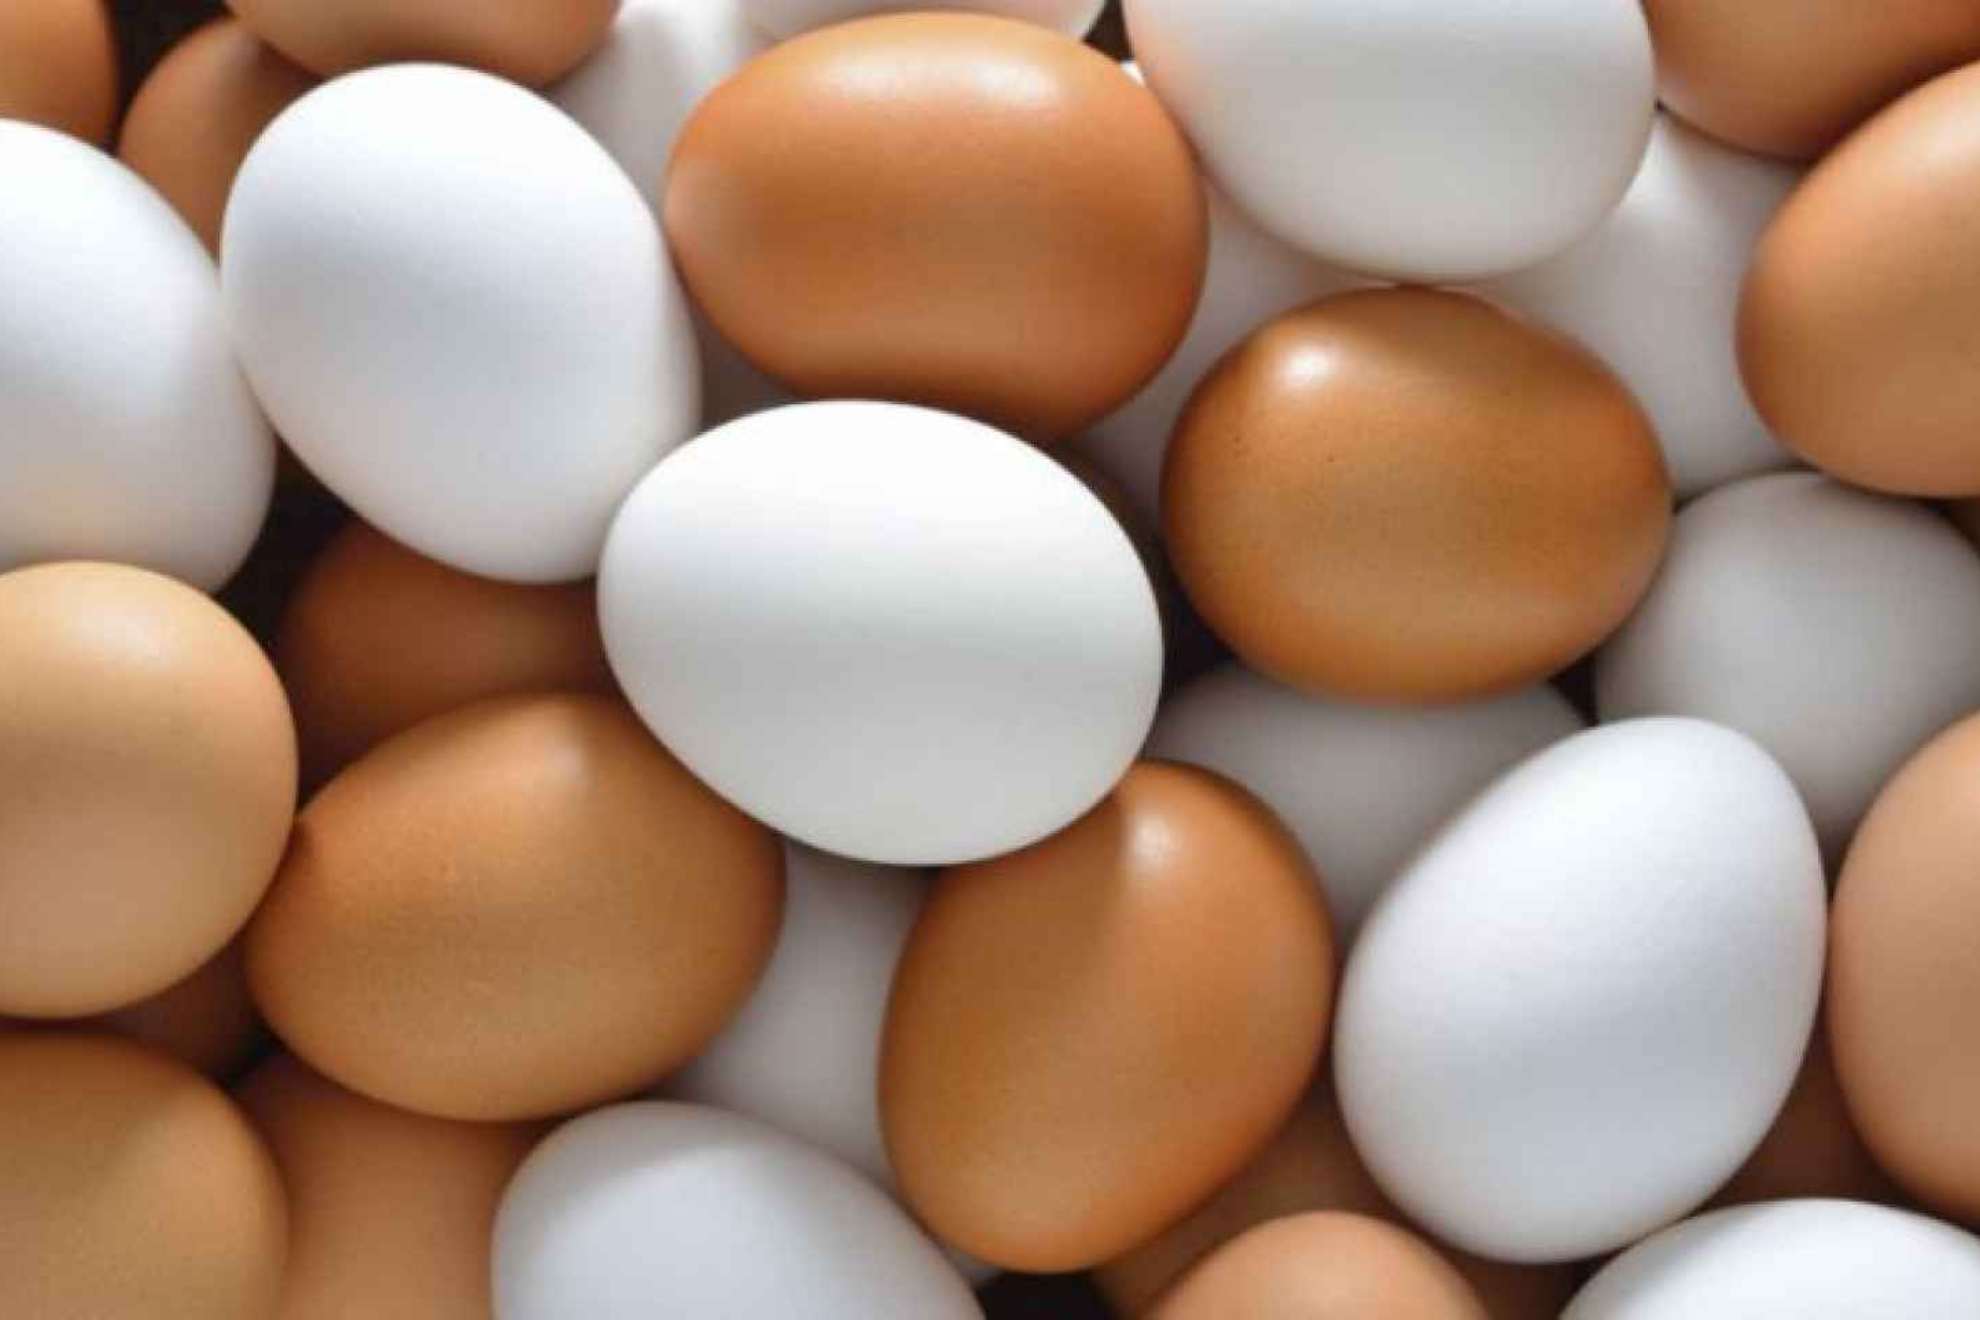 �Es cierto que solo se pueden tomar tres huevos a la semana?